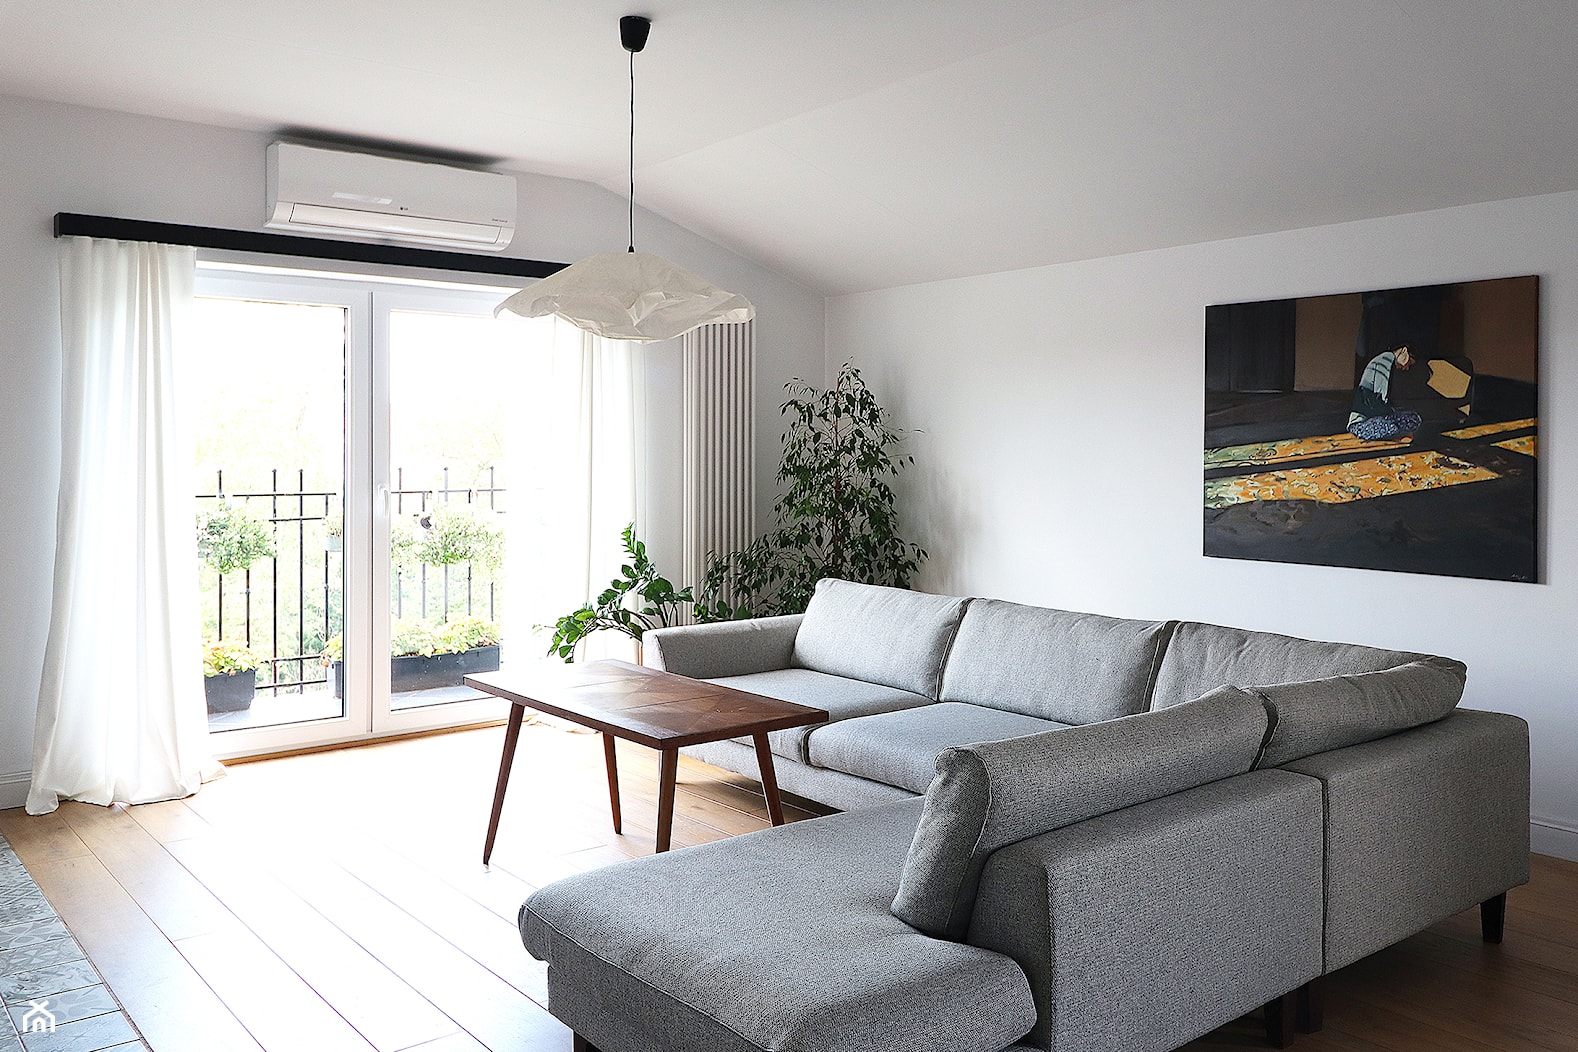 Mieszkanie AL - Salon, styl minimalistyczny - zdjęcie od Agnieszka Lisek architekt wnętrz - Homebook